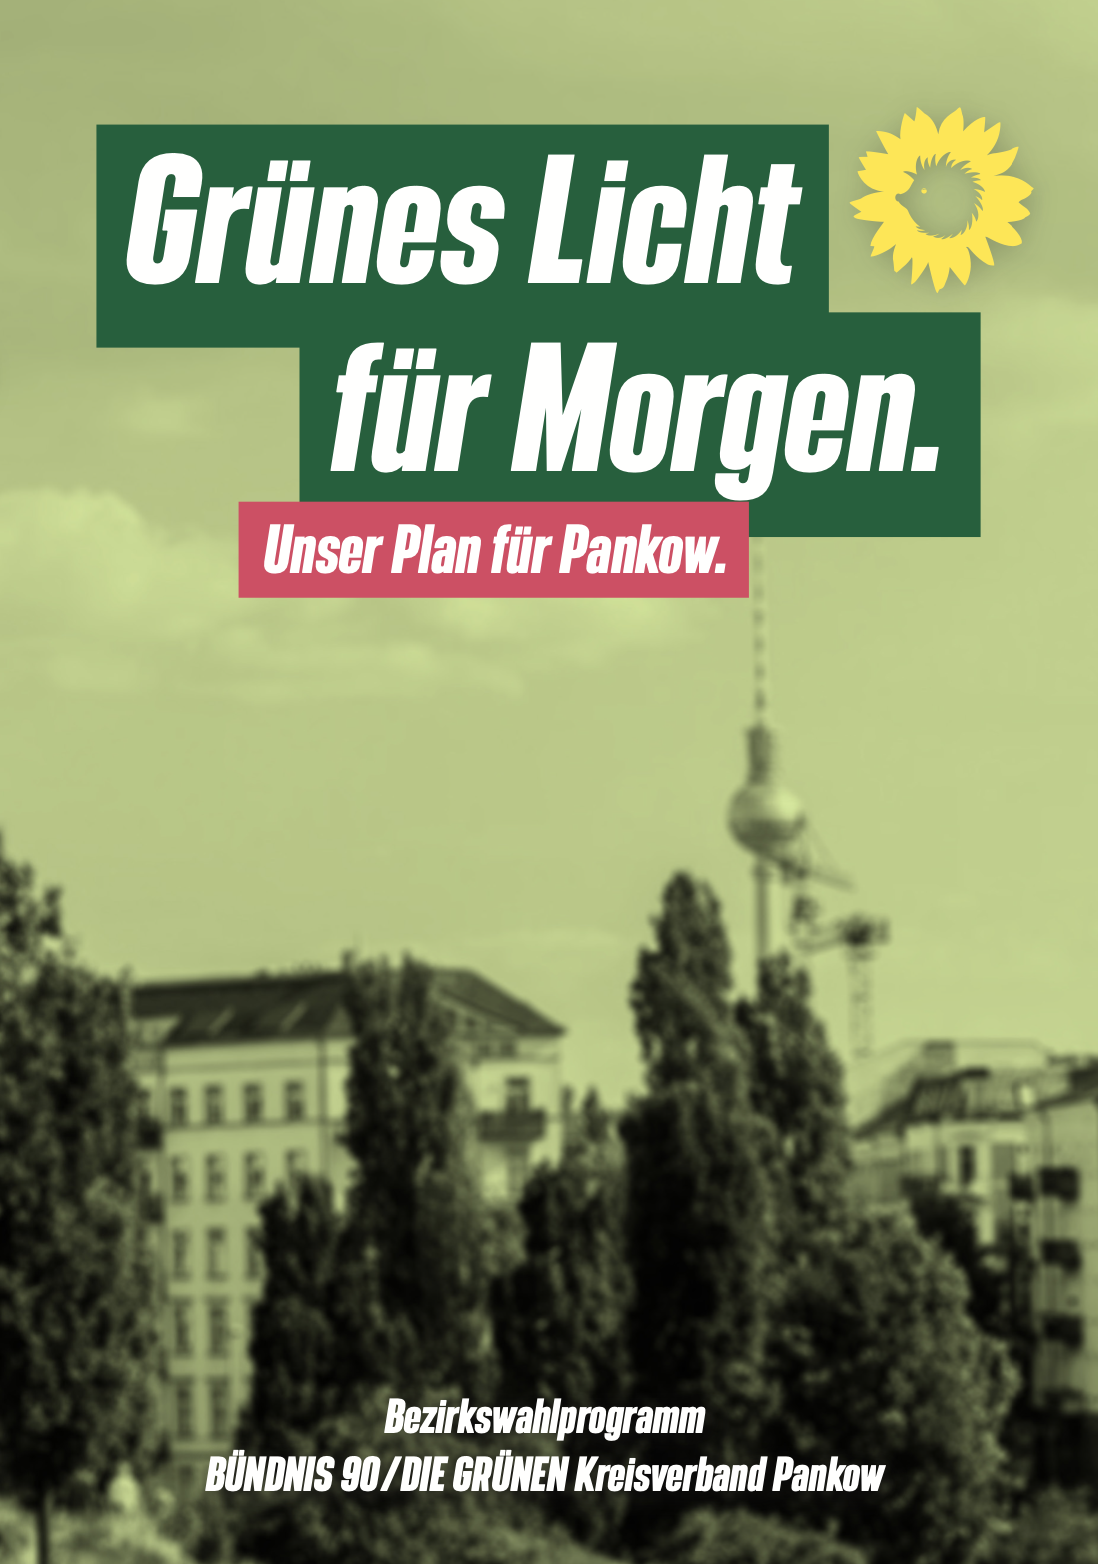 Wahlprogramm "Grünes Licht für Morgen. Unser Plan für Pankow"